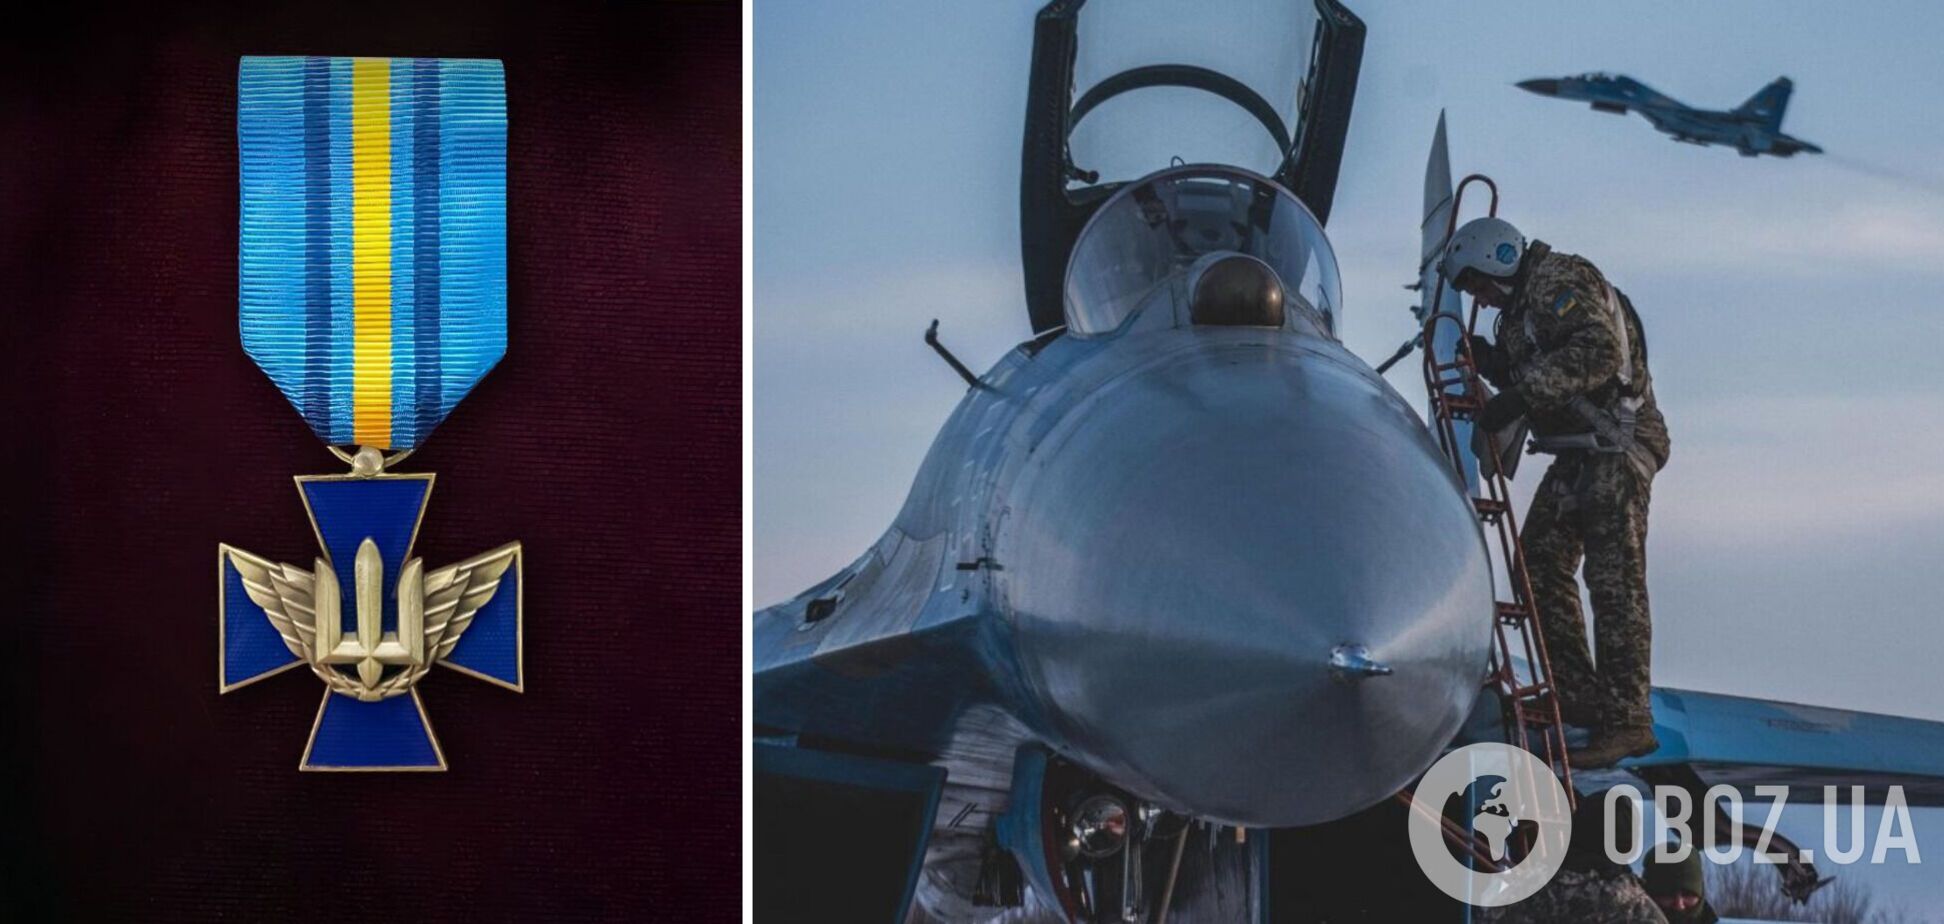 В Украине появилась новая военная награда: кто получит 'Крест Воздушных сил'